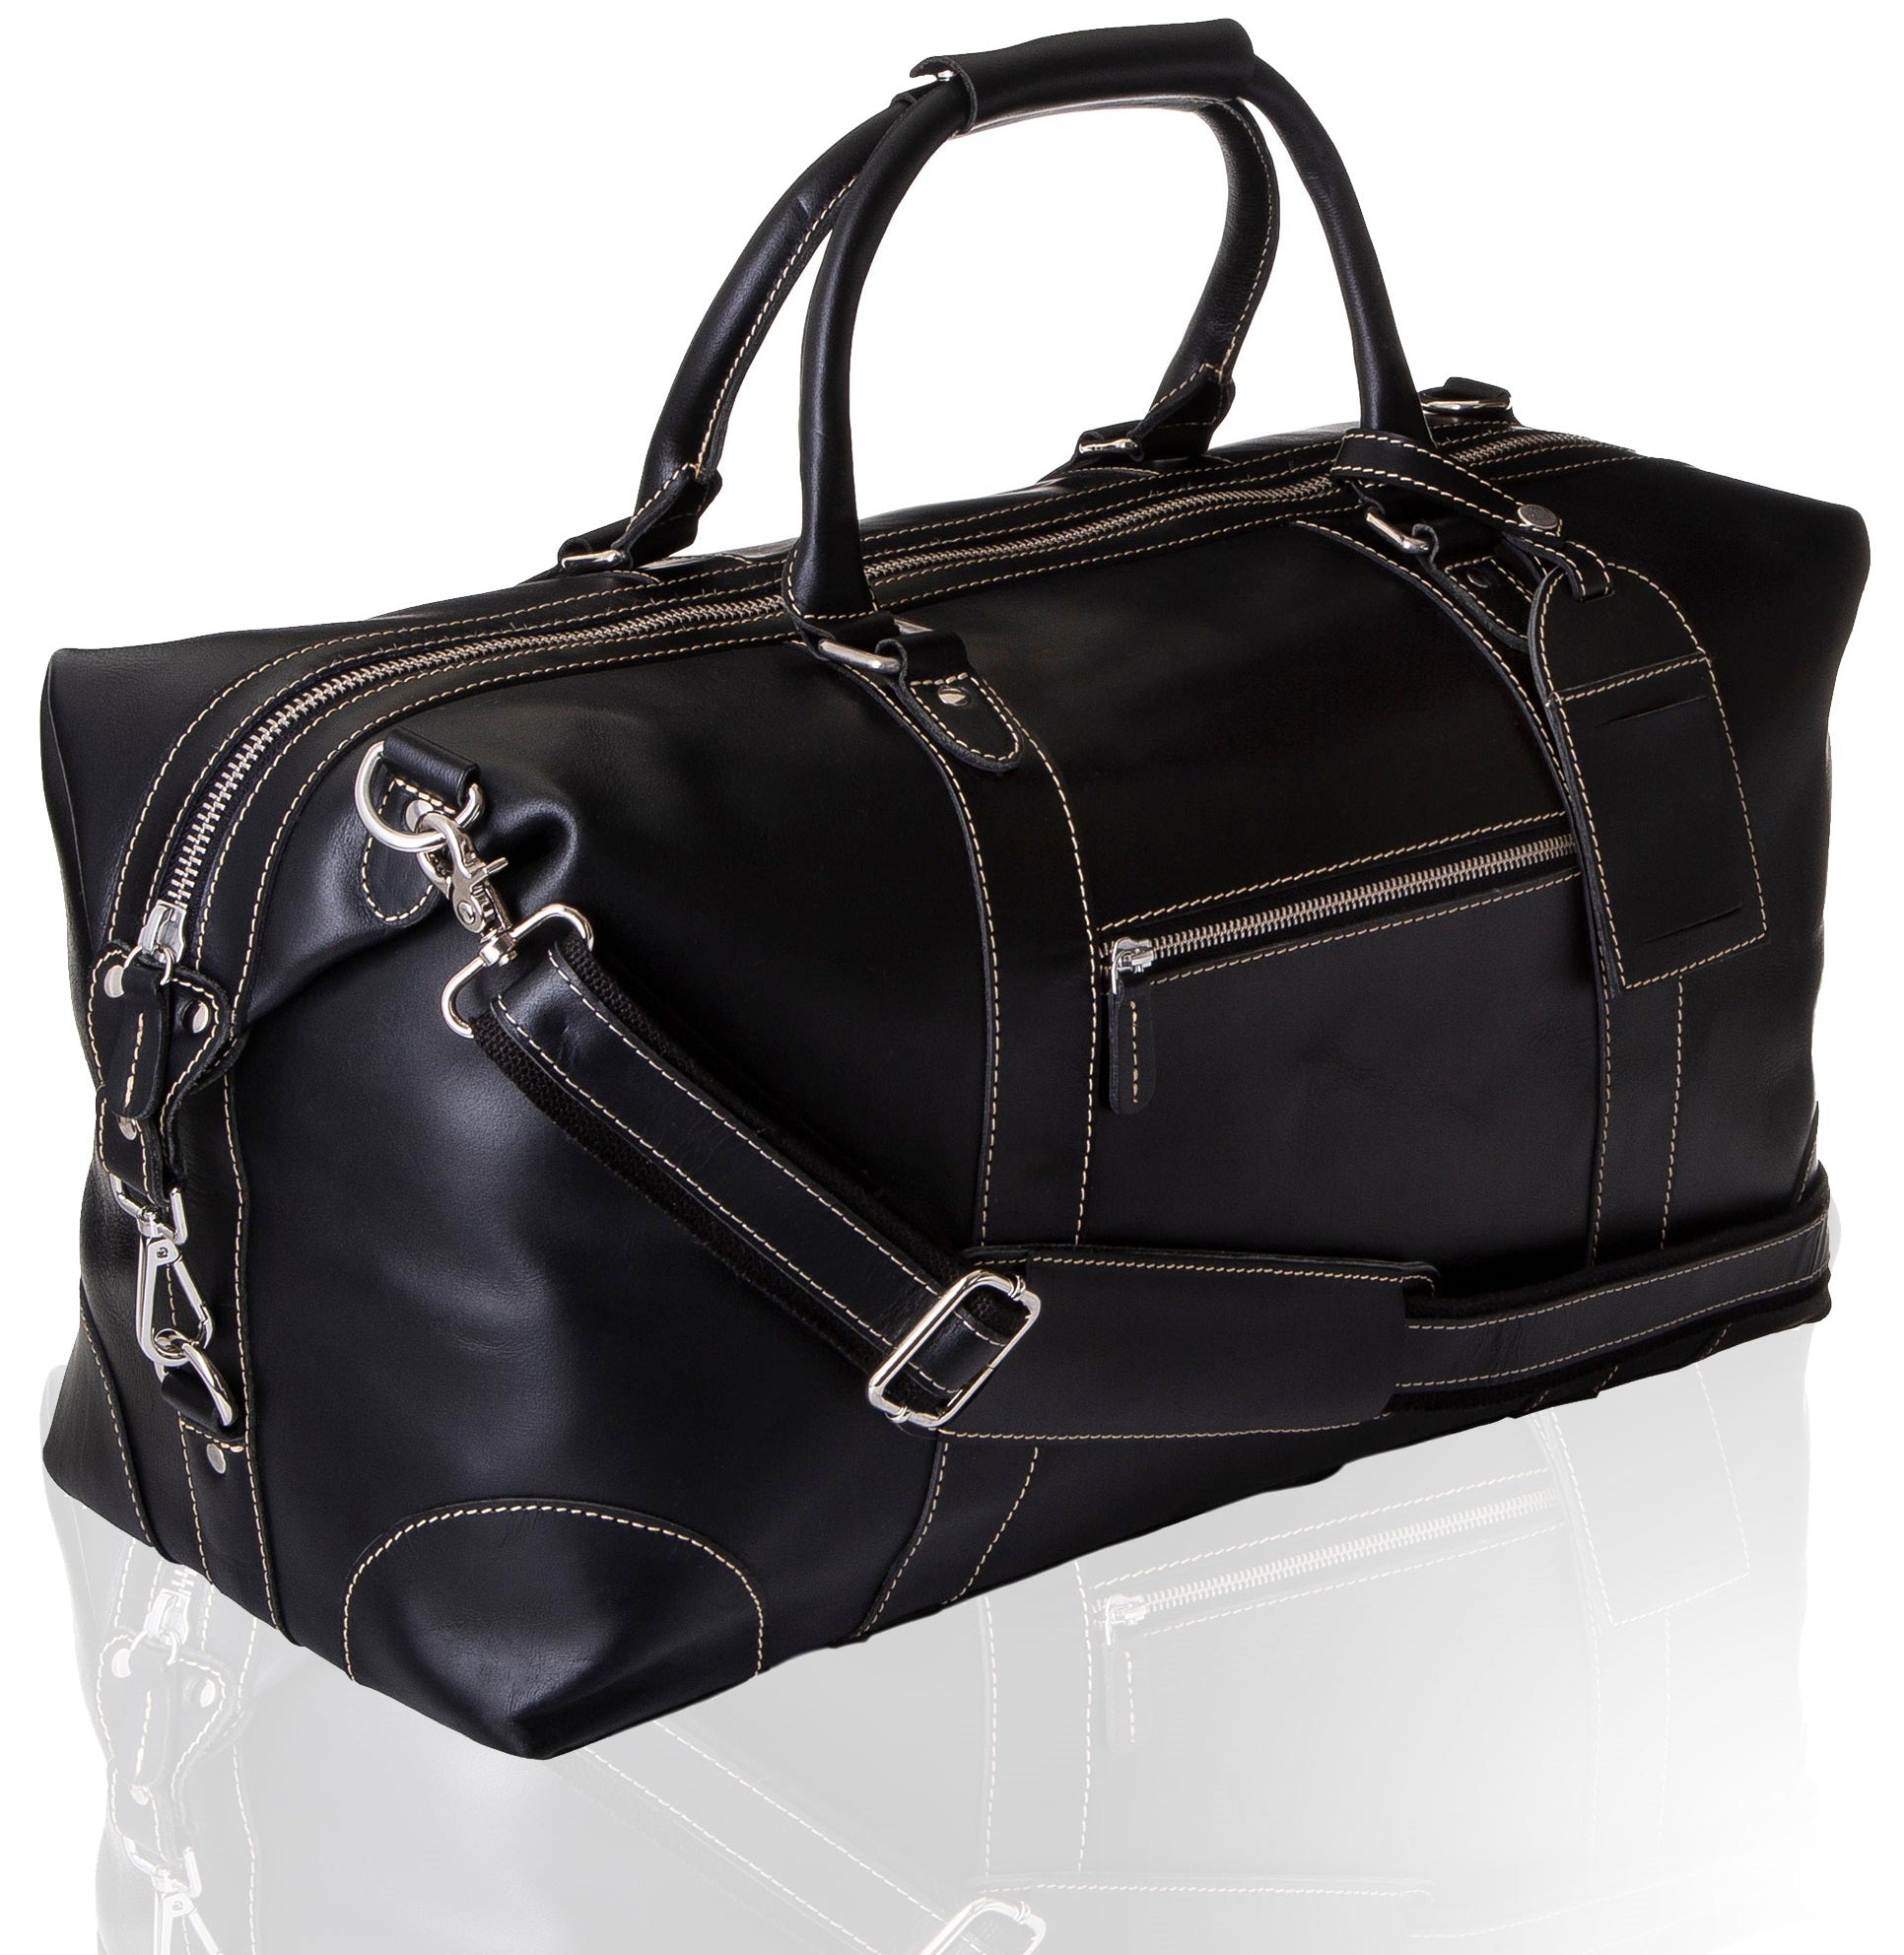 Louis Vuitton Les Parfums VVN Leather Travel Cases - BAGAHOLICBOY